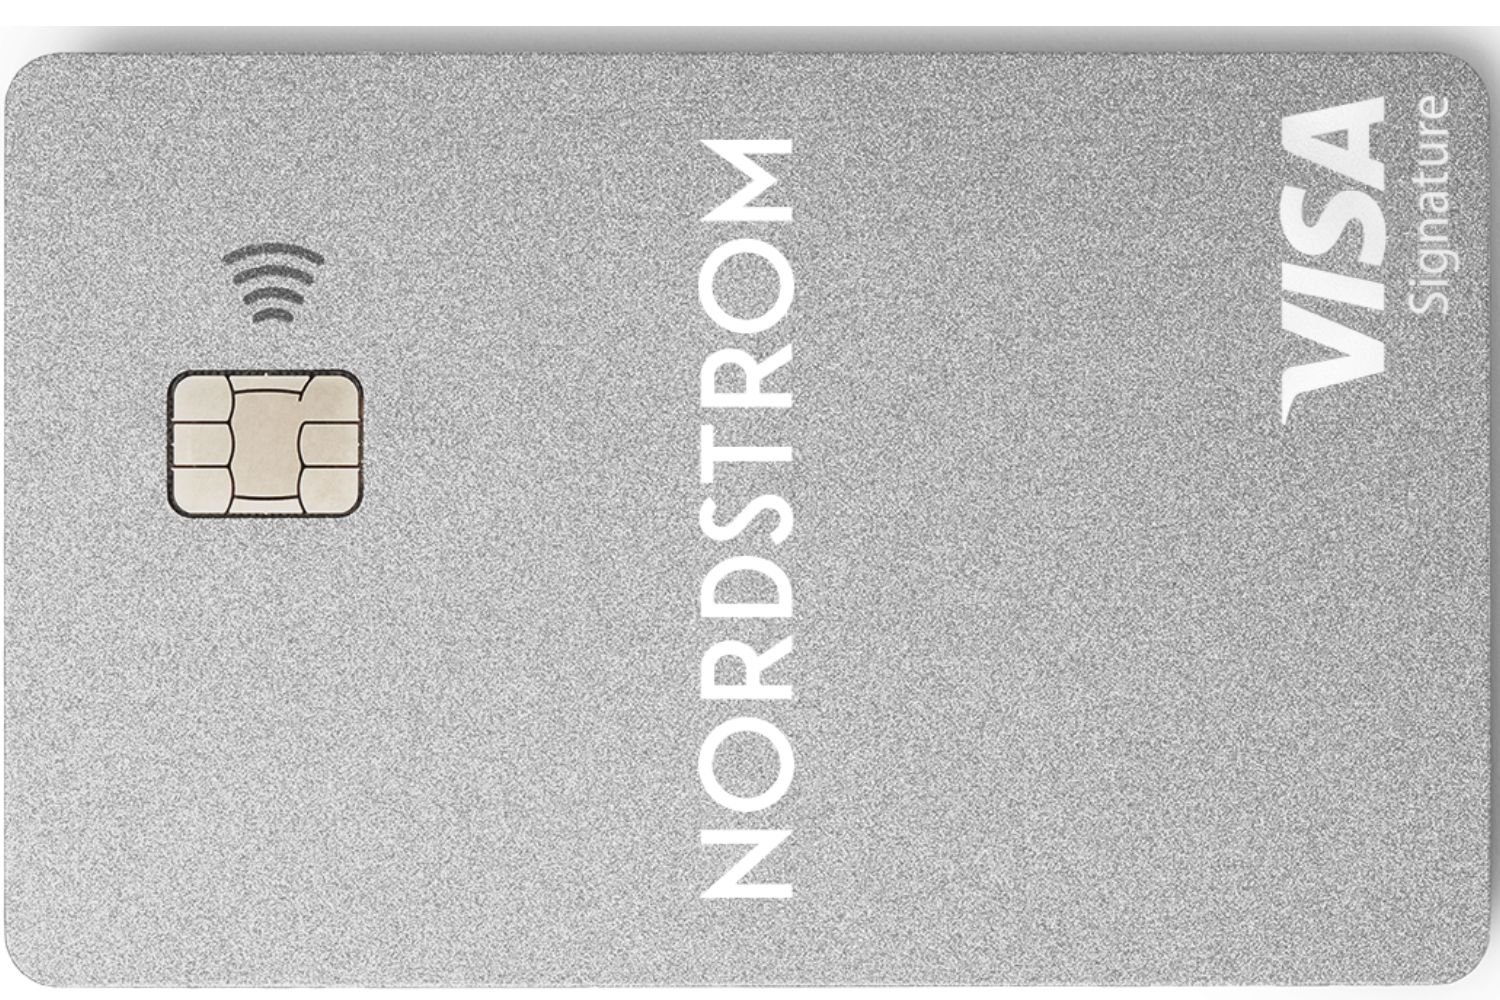 beneficios de la tarjeta de credito nordstrom